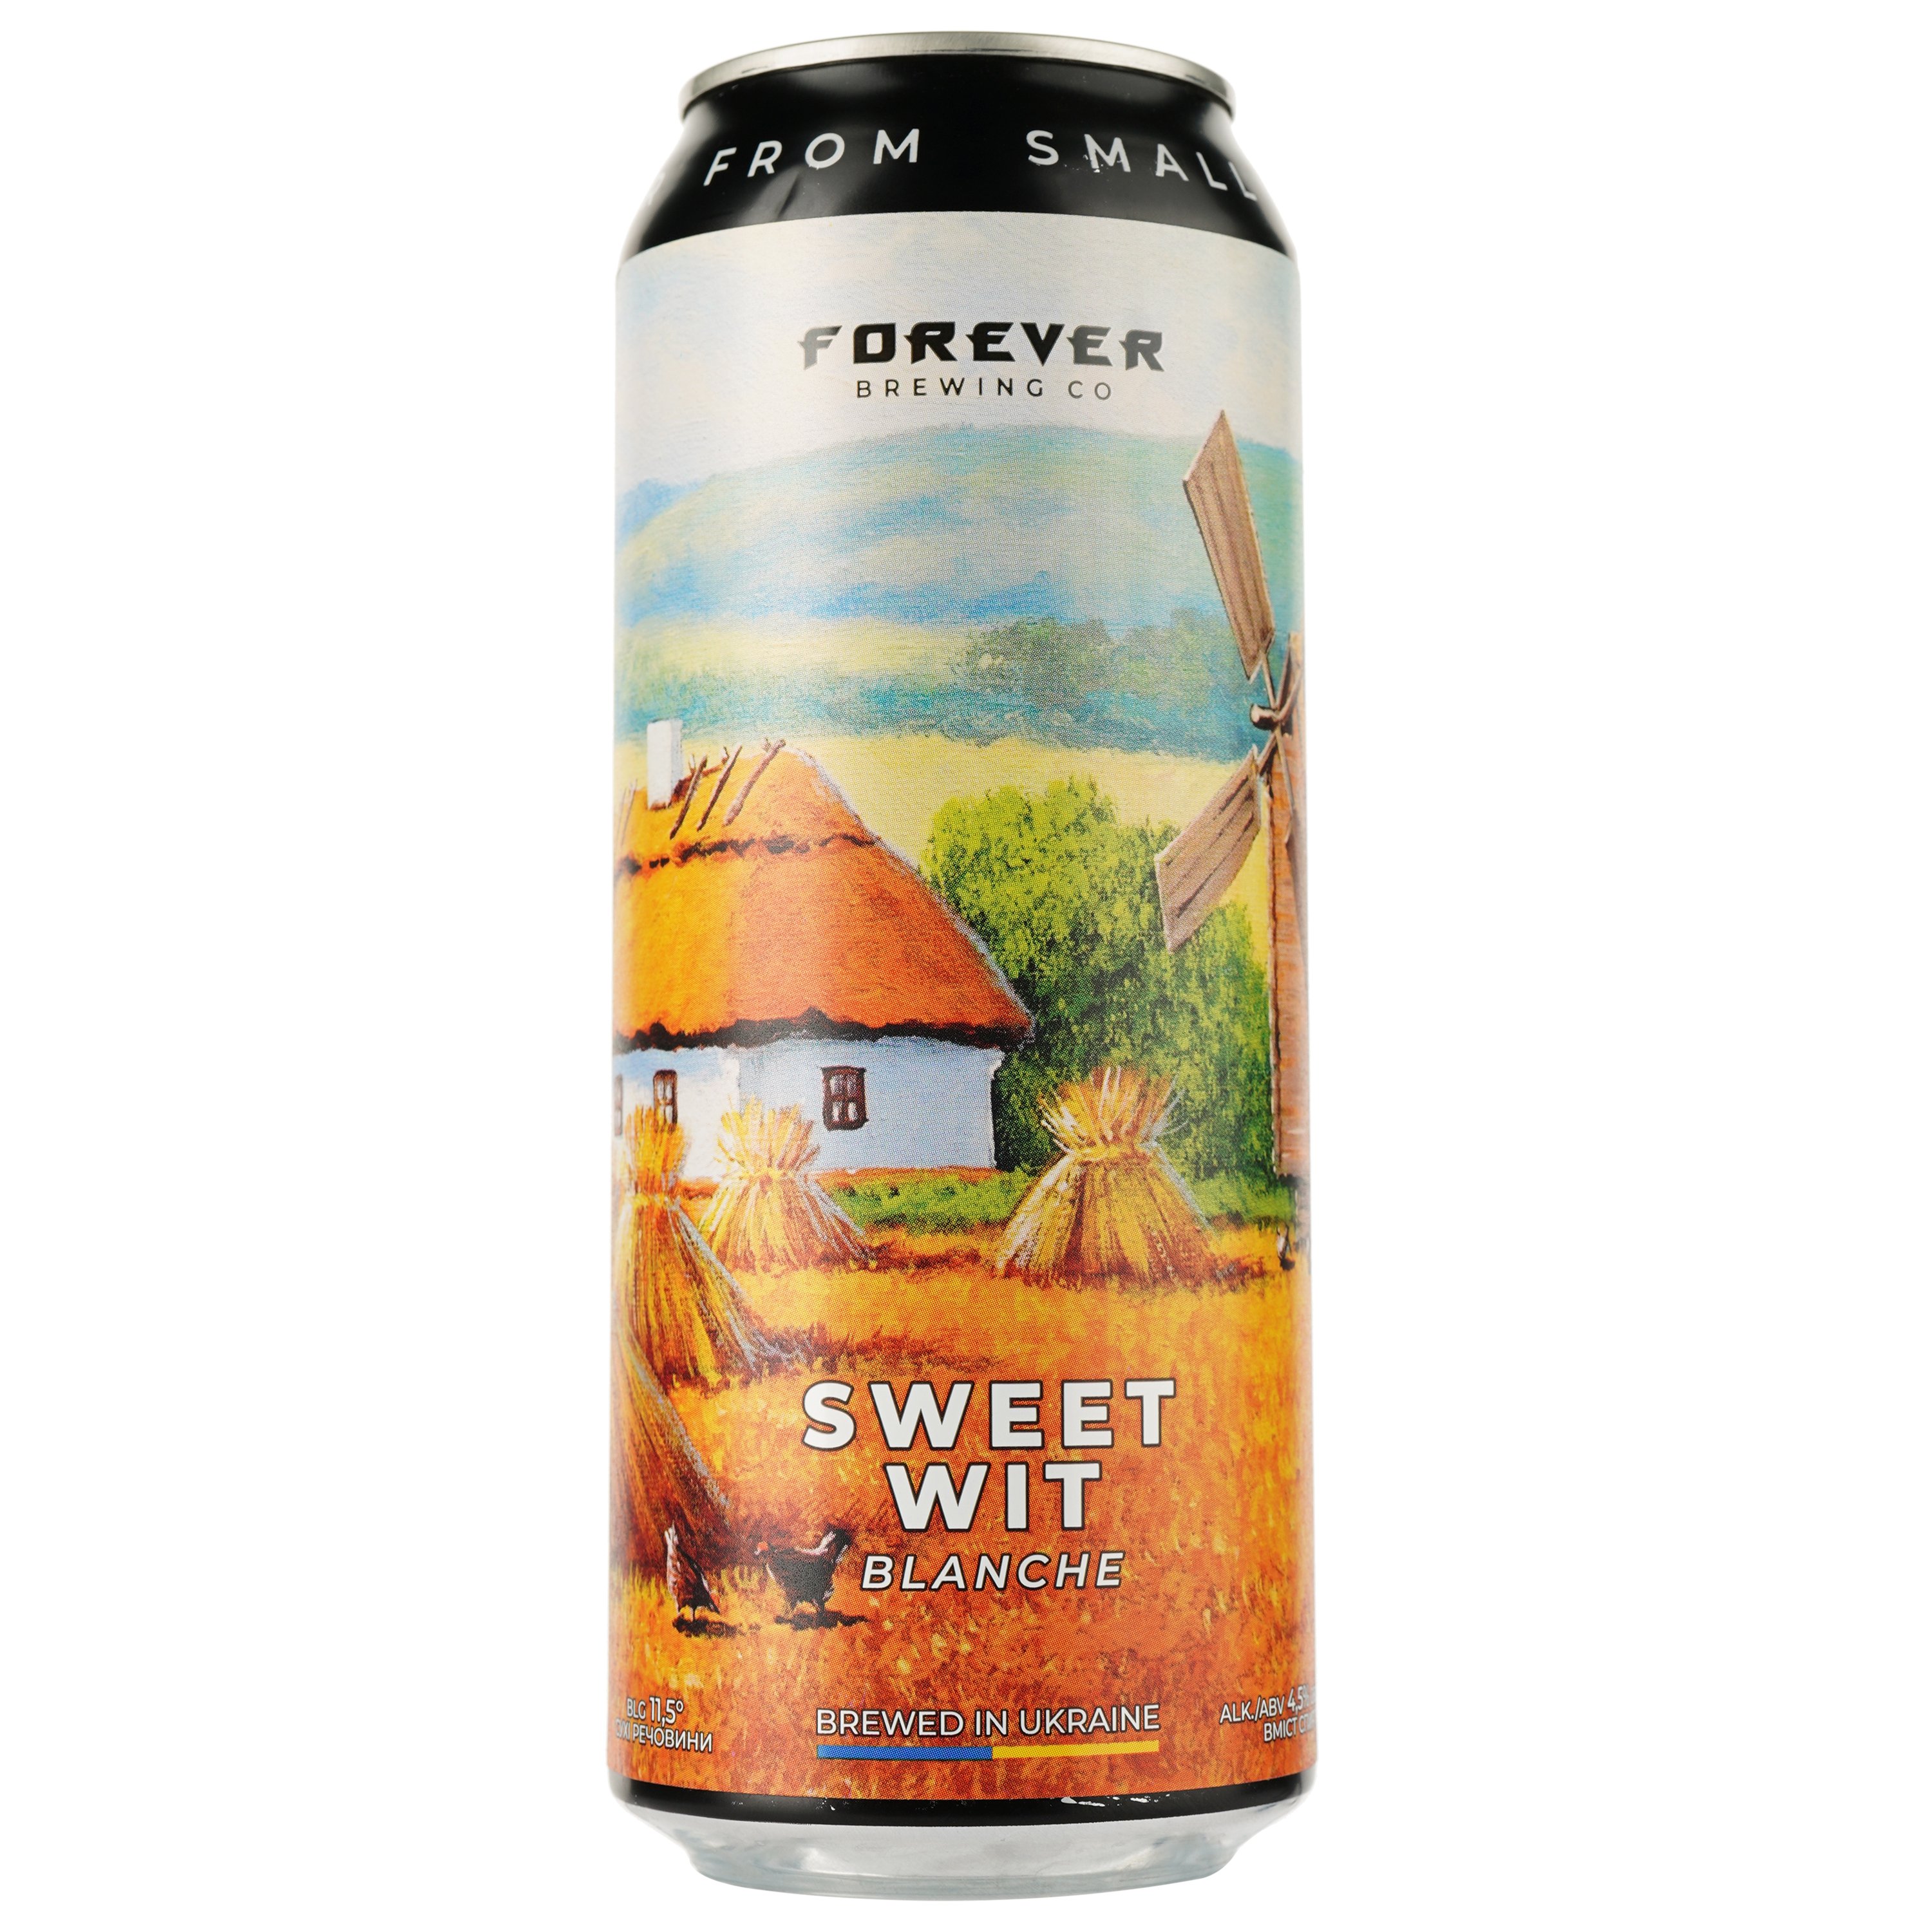 Пиво Forever Sweet Wit, светлое, нефильтрованное, 4,5%, ж/б, 0,5 л - фото 1